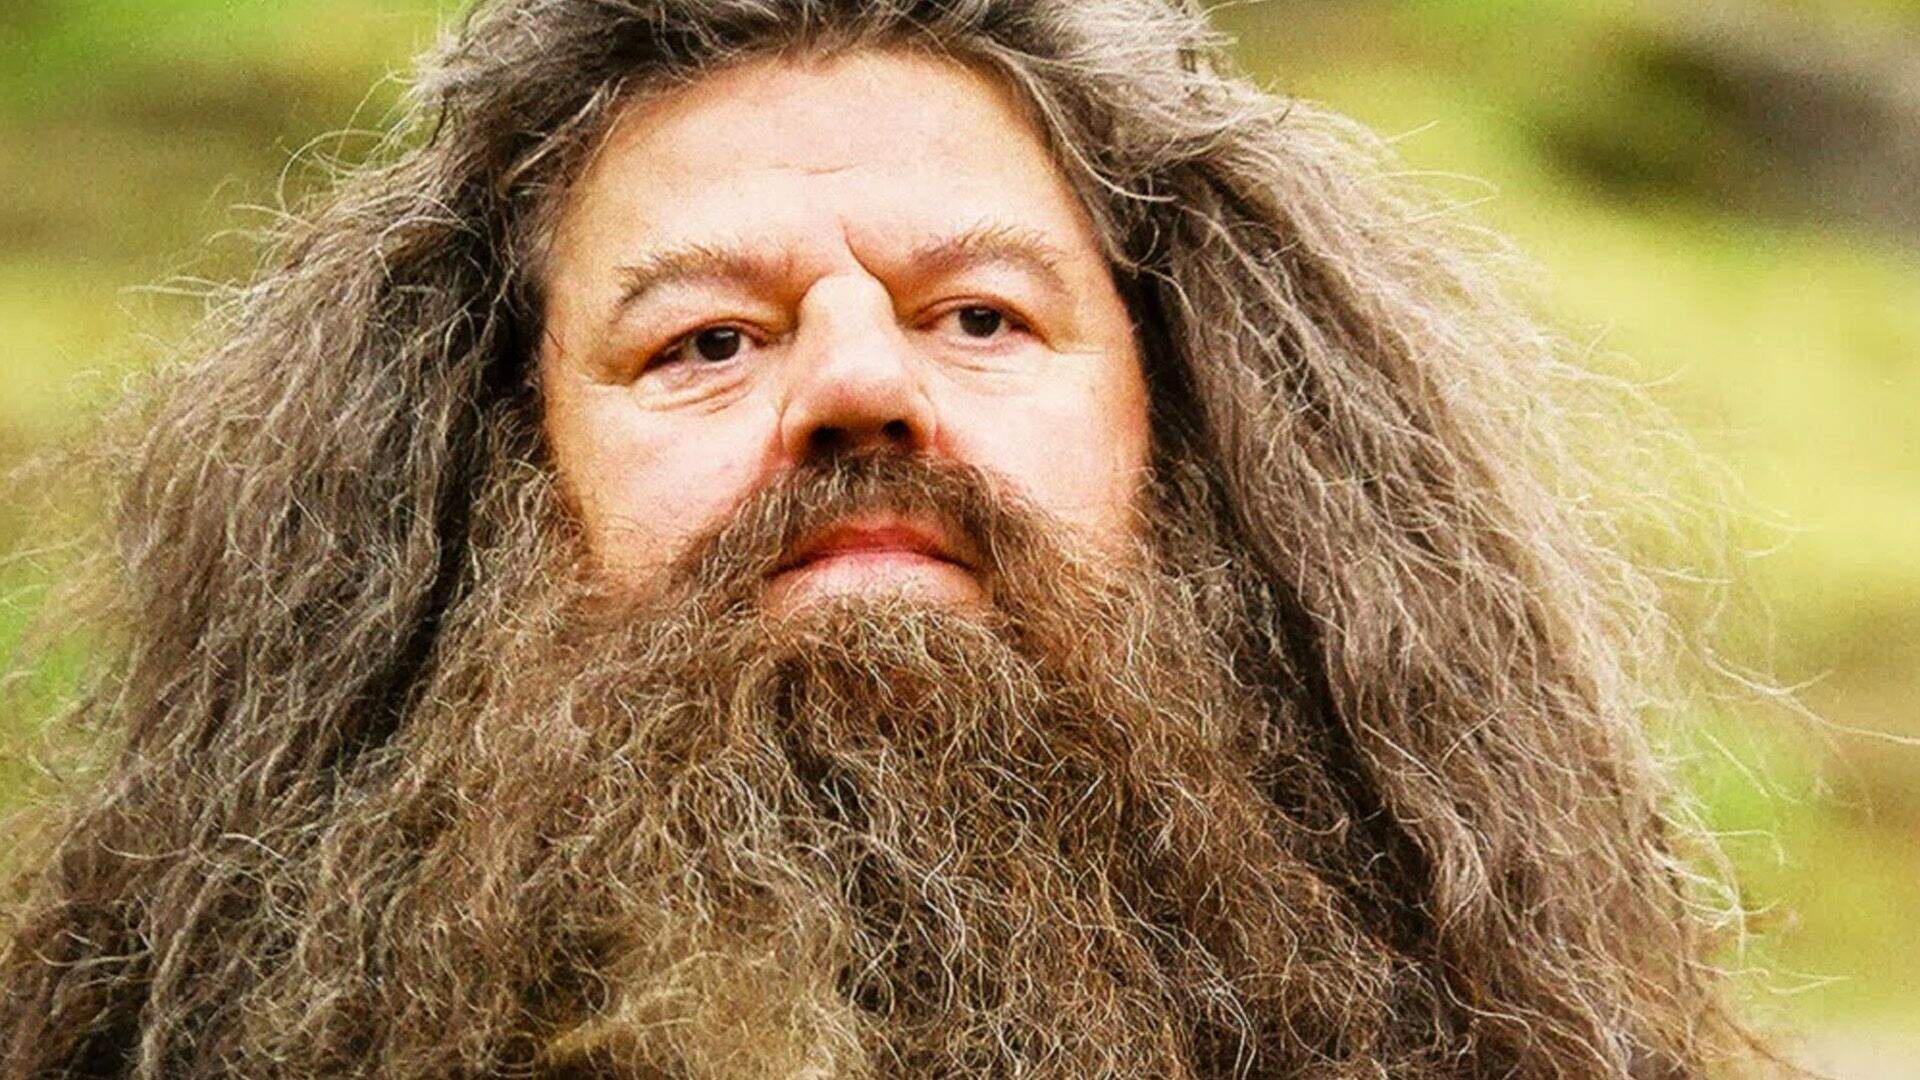 Morre aos 72 anos o ator Robbie Coltrane, que interpretou o Hagrid em ‘Harry Potter’